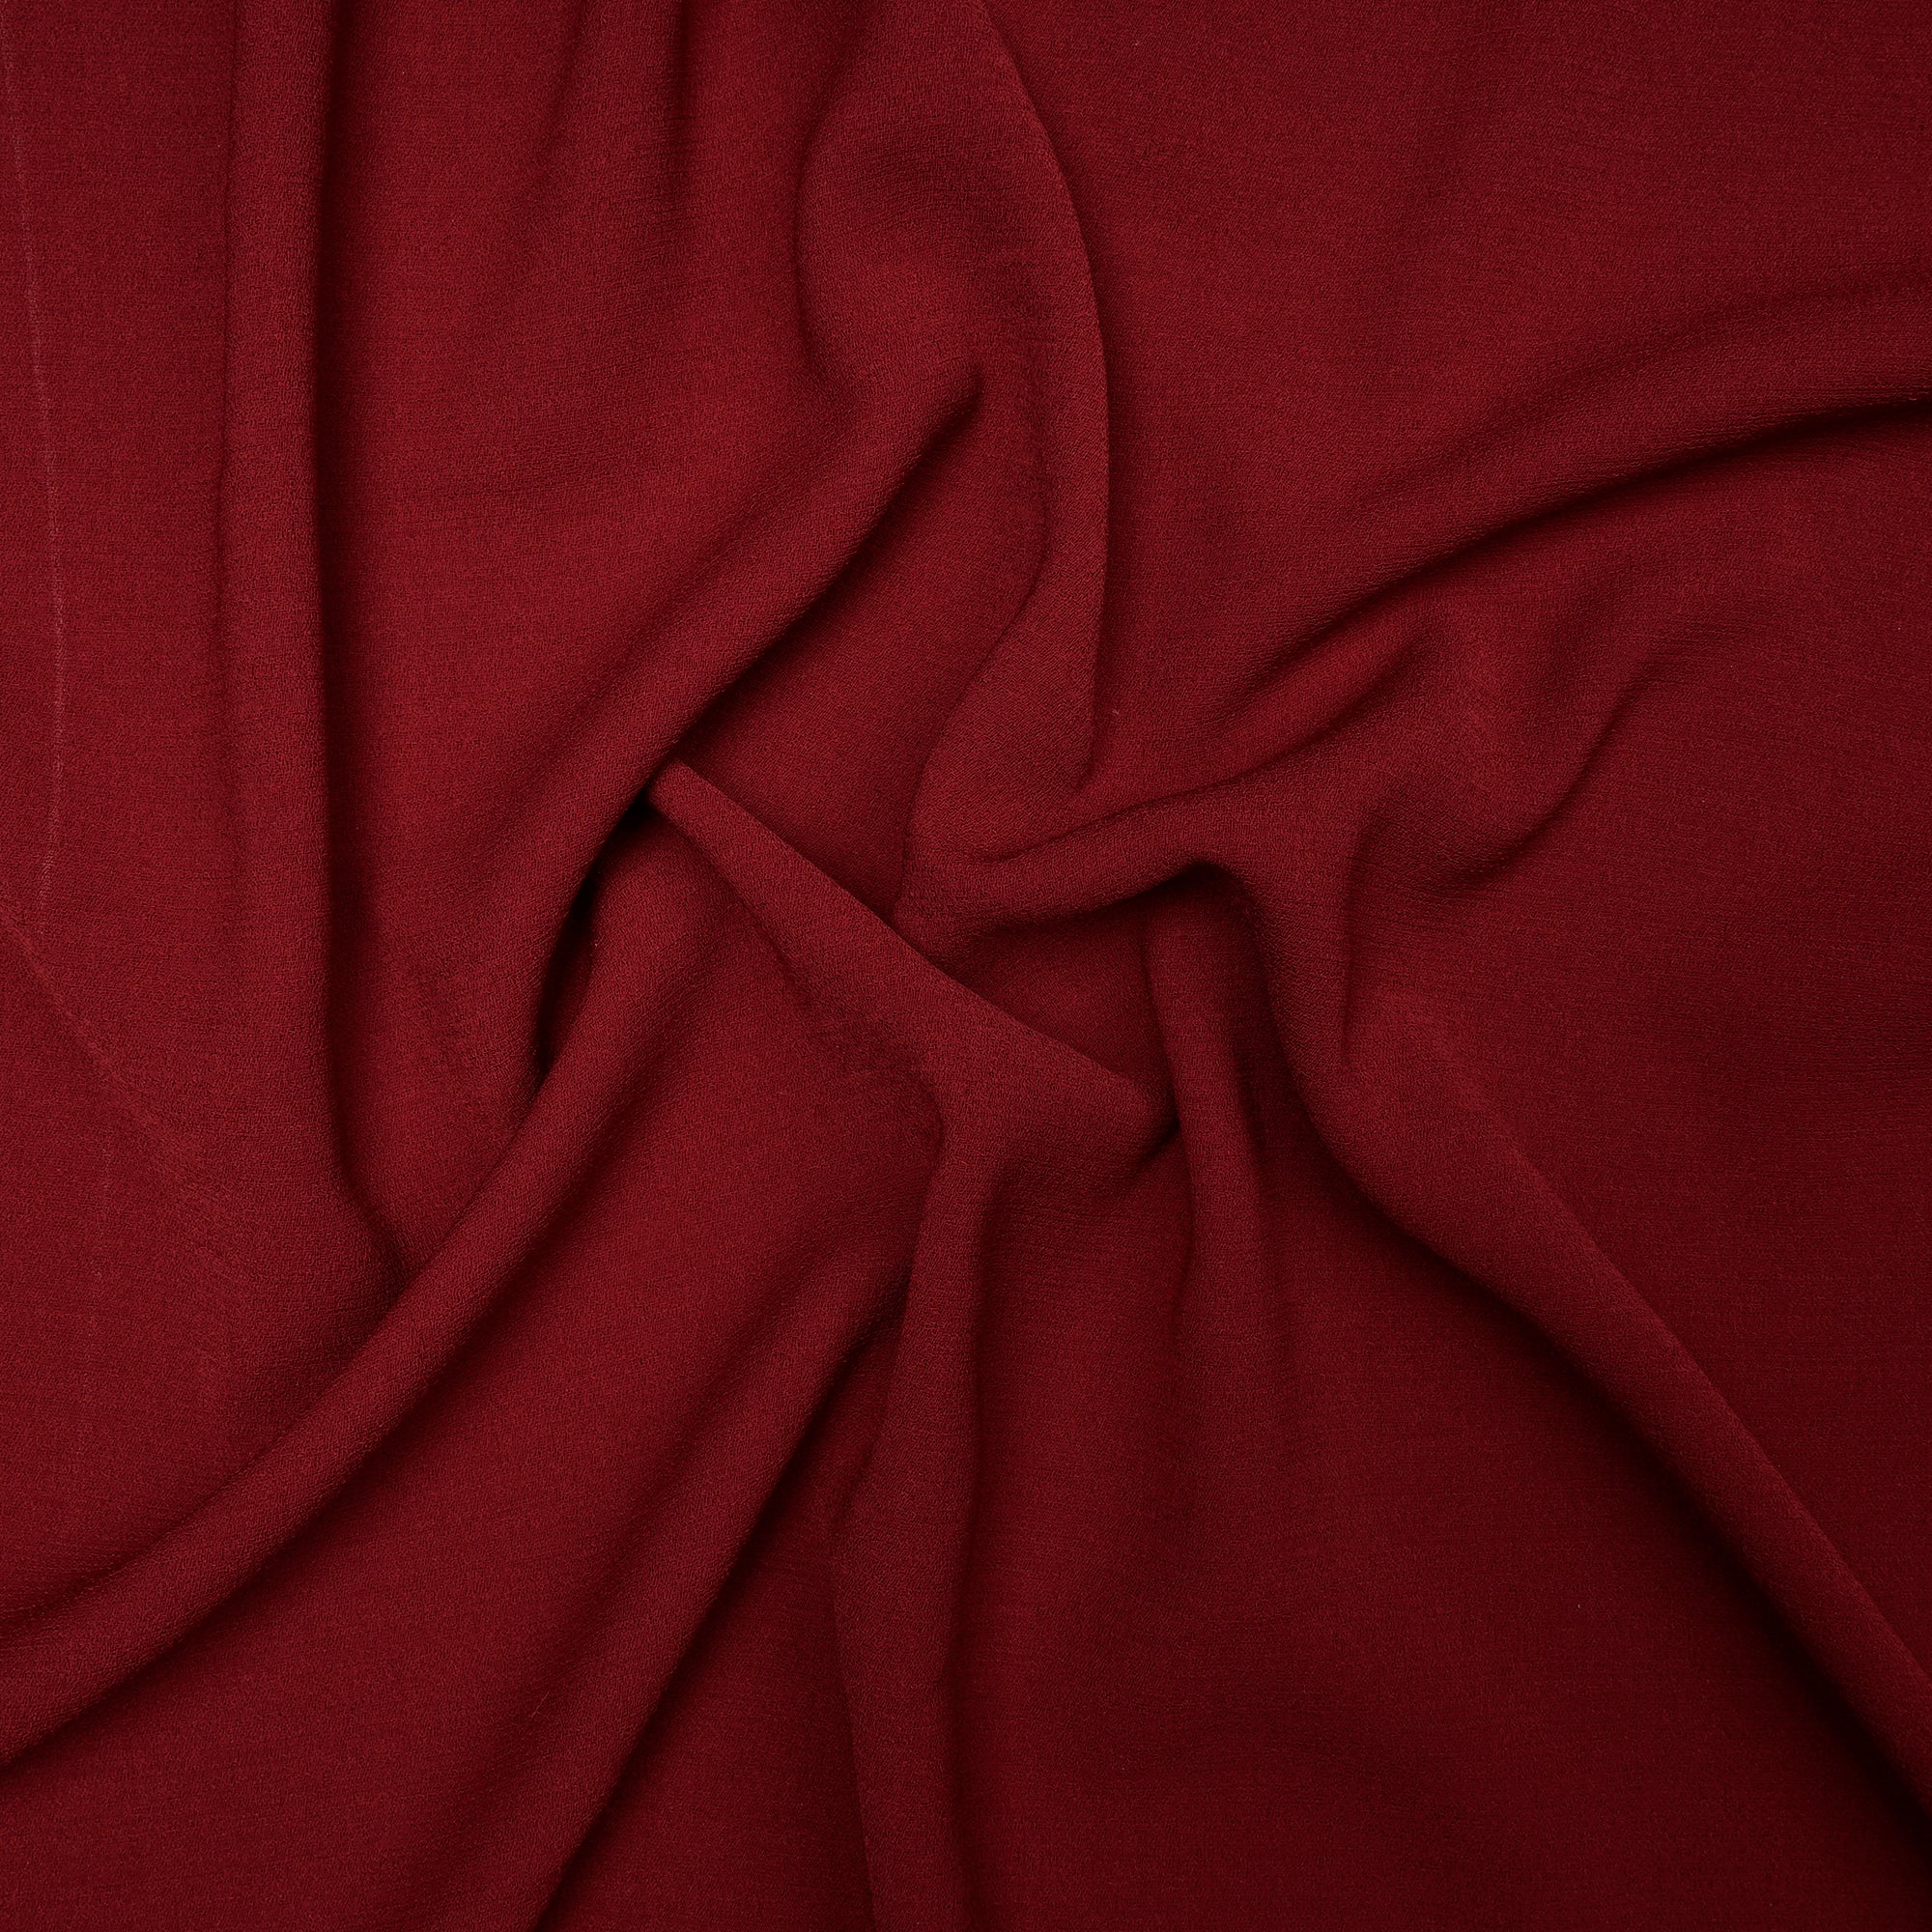 Dark Maroon Solid Dyed Imported Heavy Slub Fabric (60" Width)